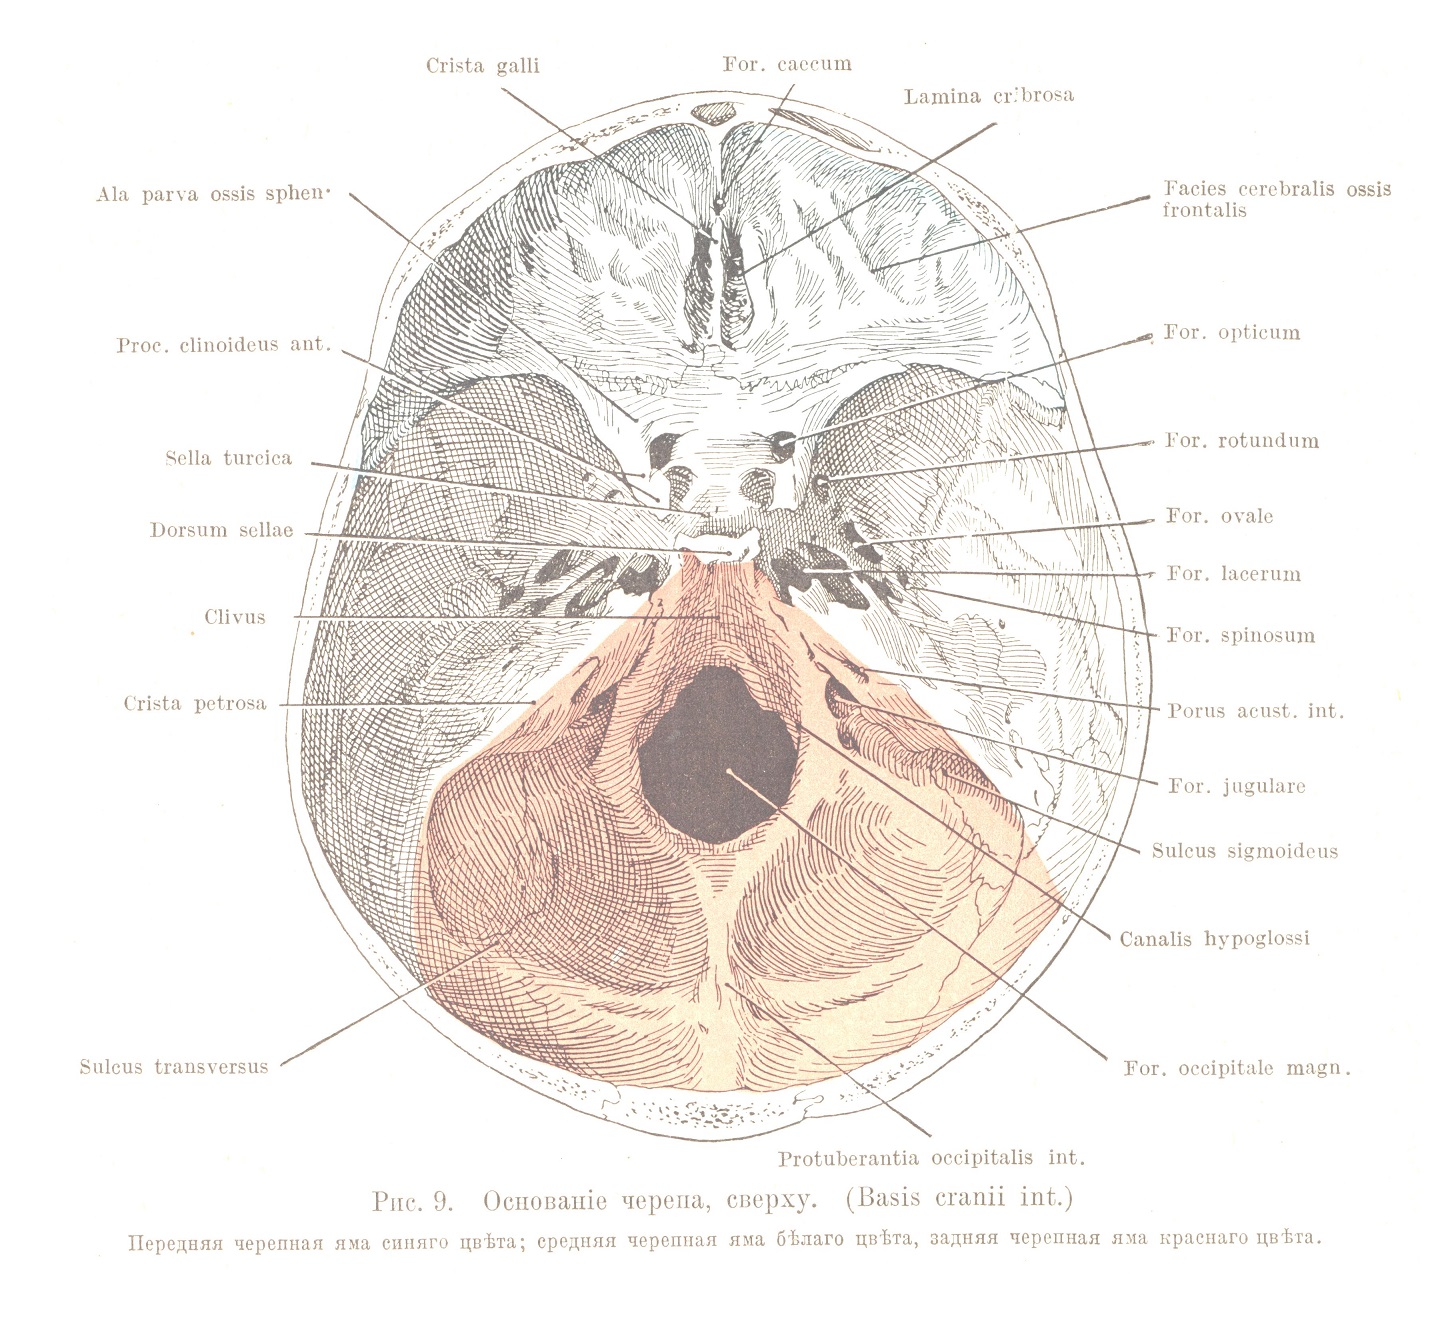 Основаніе черепа, сверху. (Basis cranii int.)